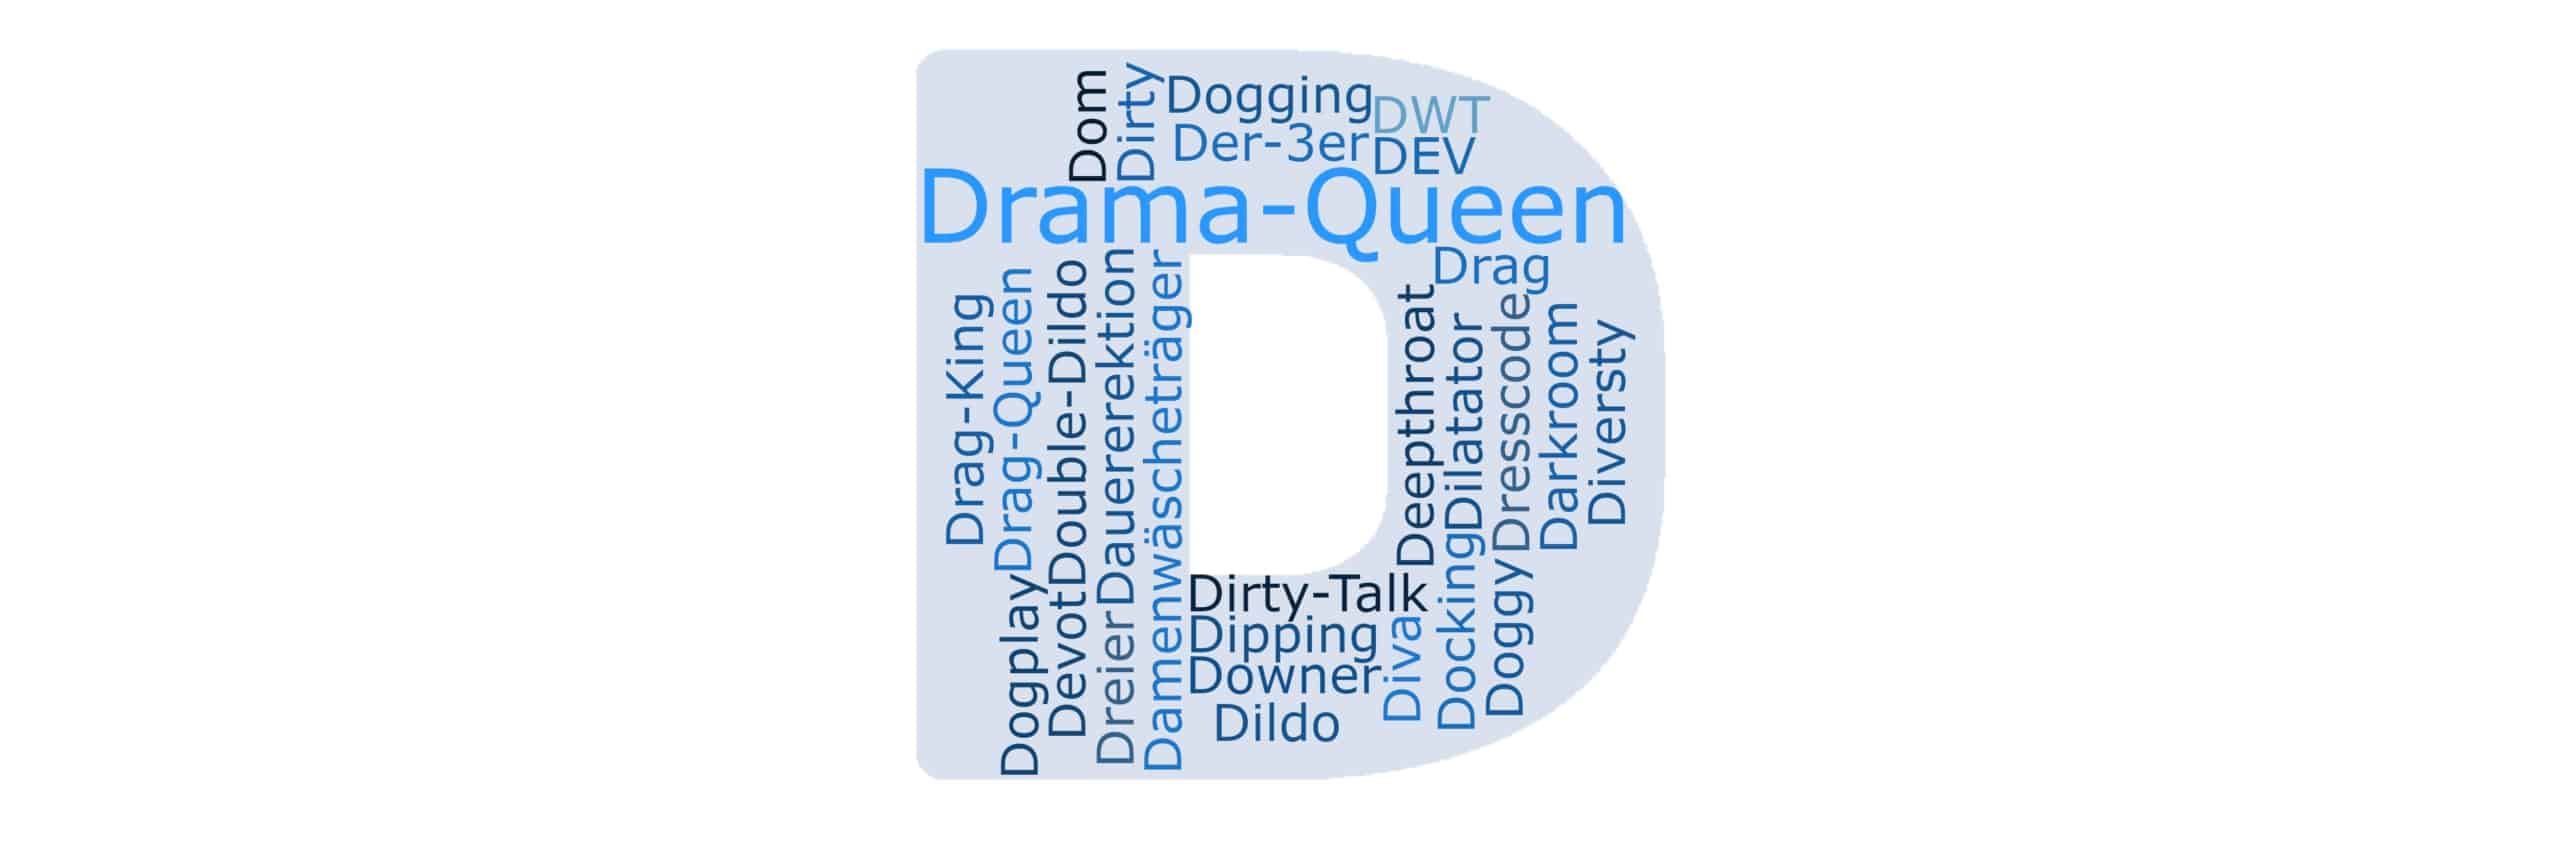 Drama queen